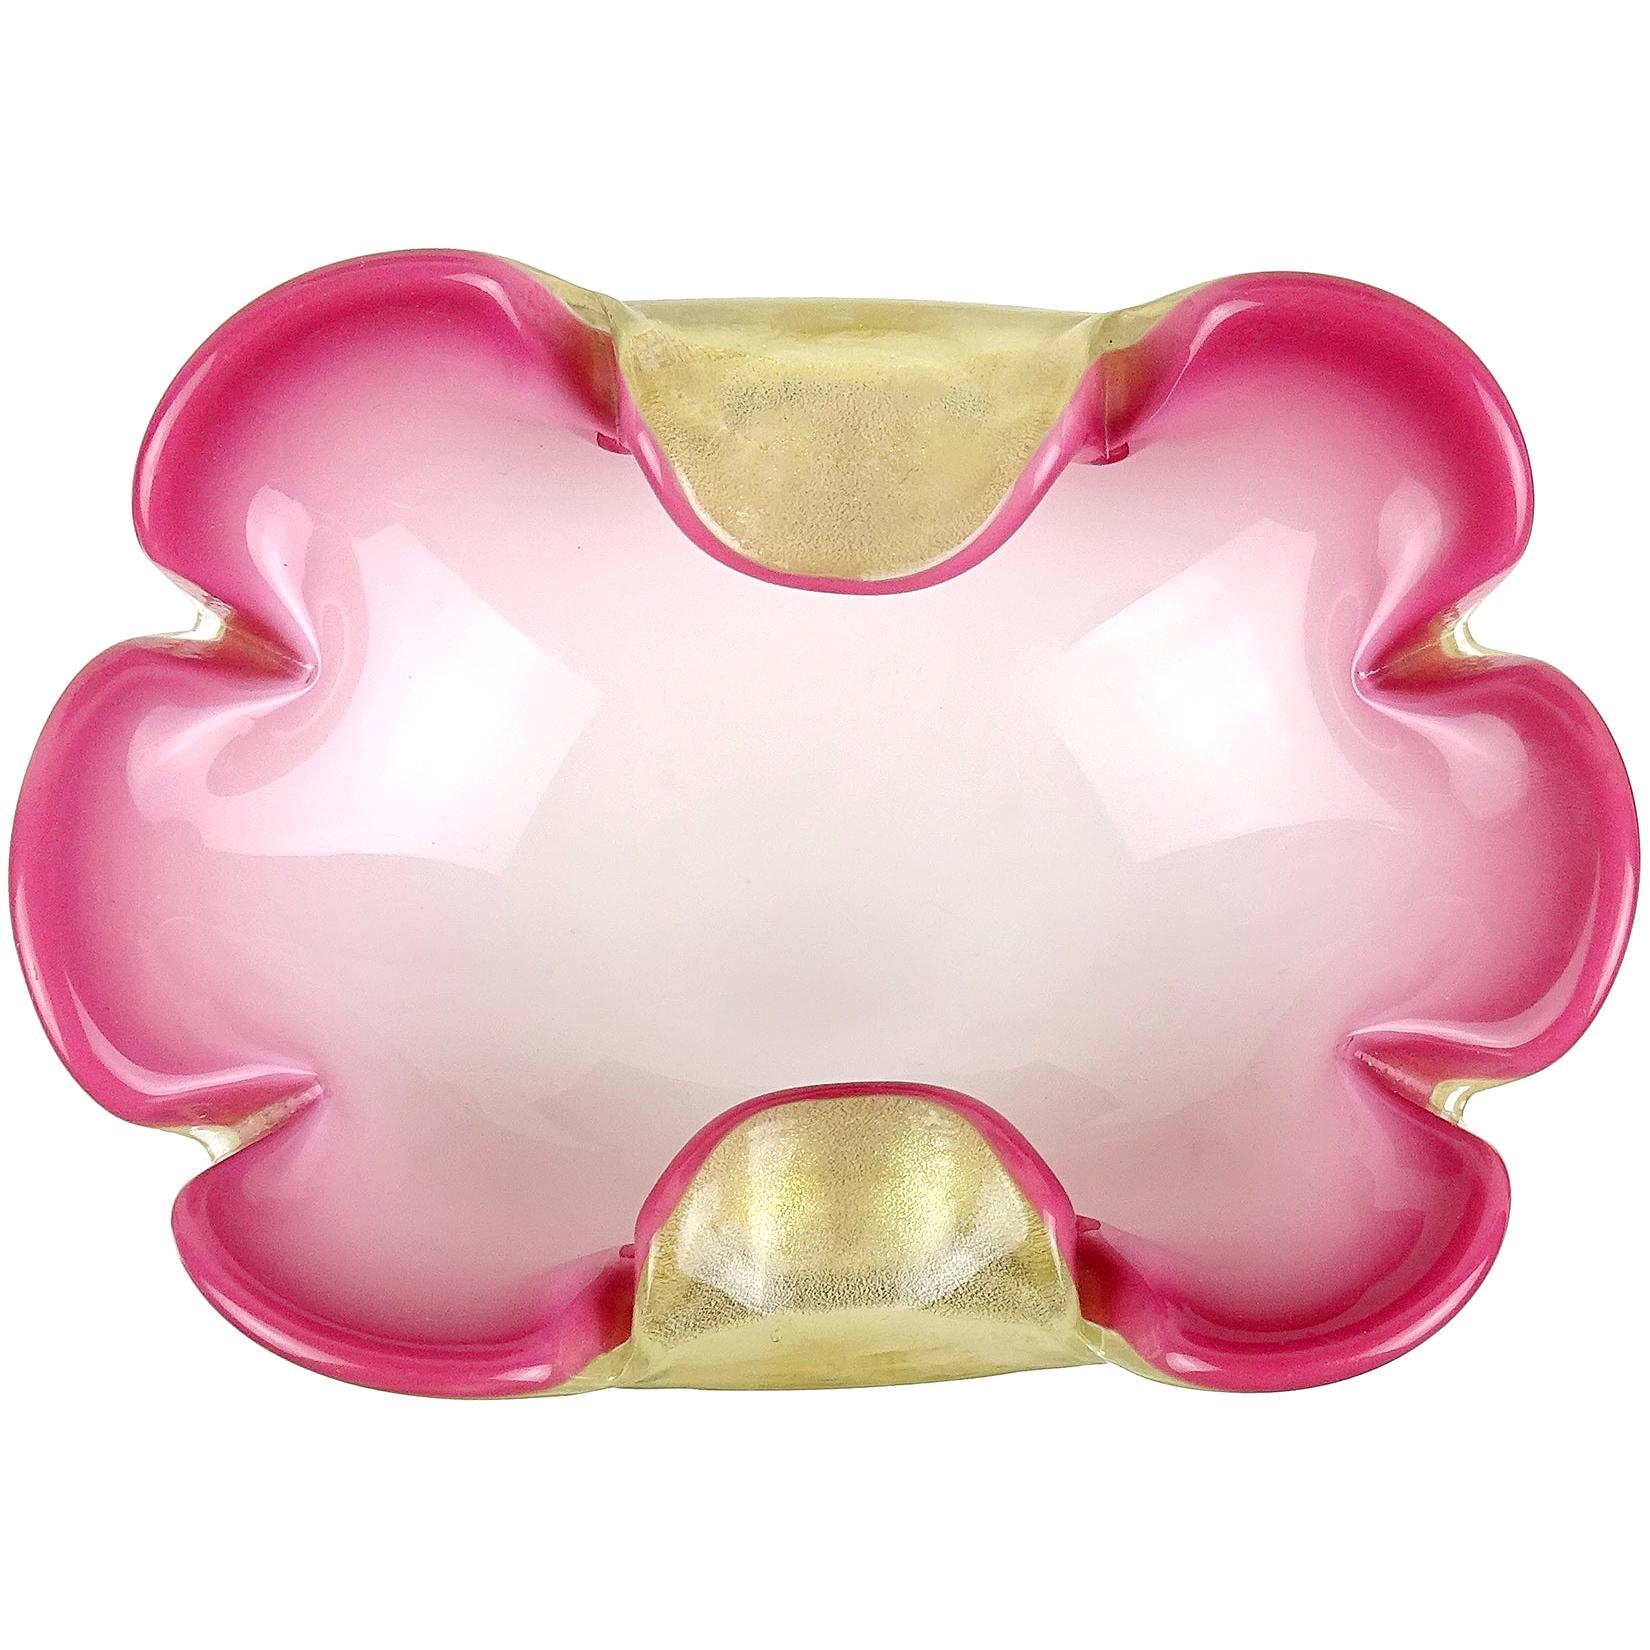 Seguso Murano Pink White Gold Flecks Italian Art Glass Midcentury Flower Bowl